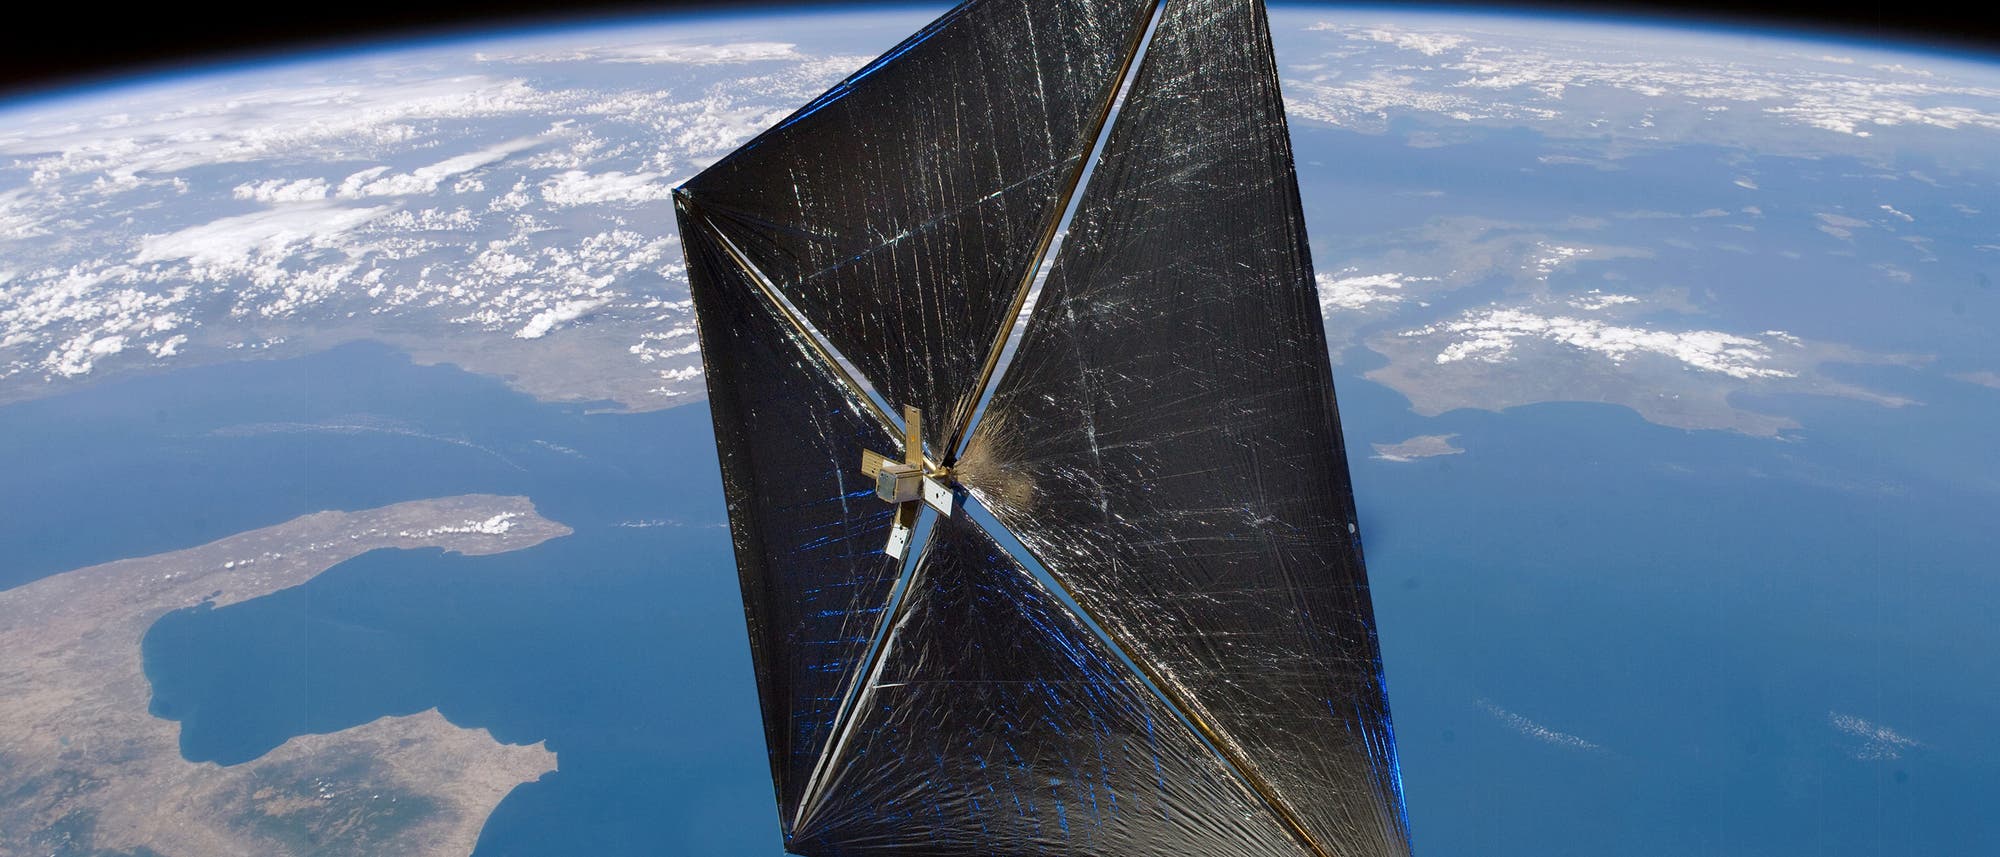 Dünn und flach. Ein interstellares Sonnensegel sieht in etwa so aus wie dieses Demonstrationsexperiment der NASA (Solar Sail Demonstrator). Die Seitenlänge beträgt 37 Meter.